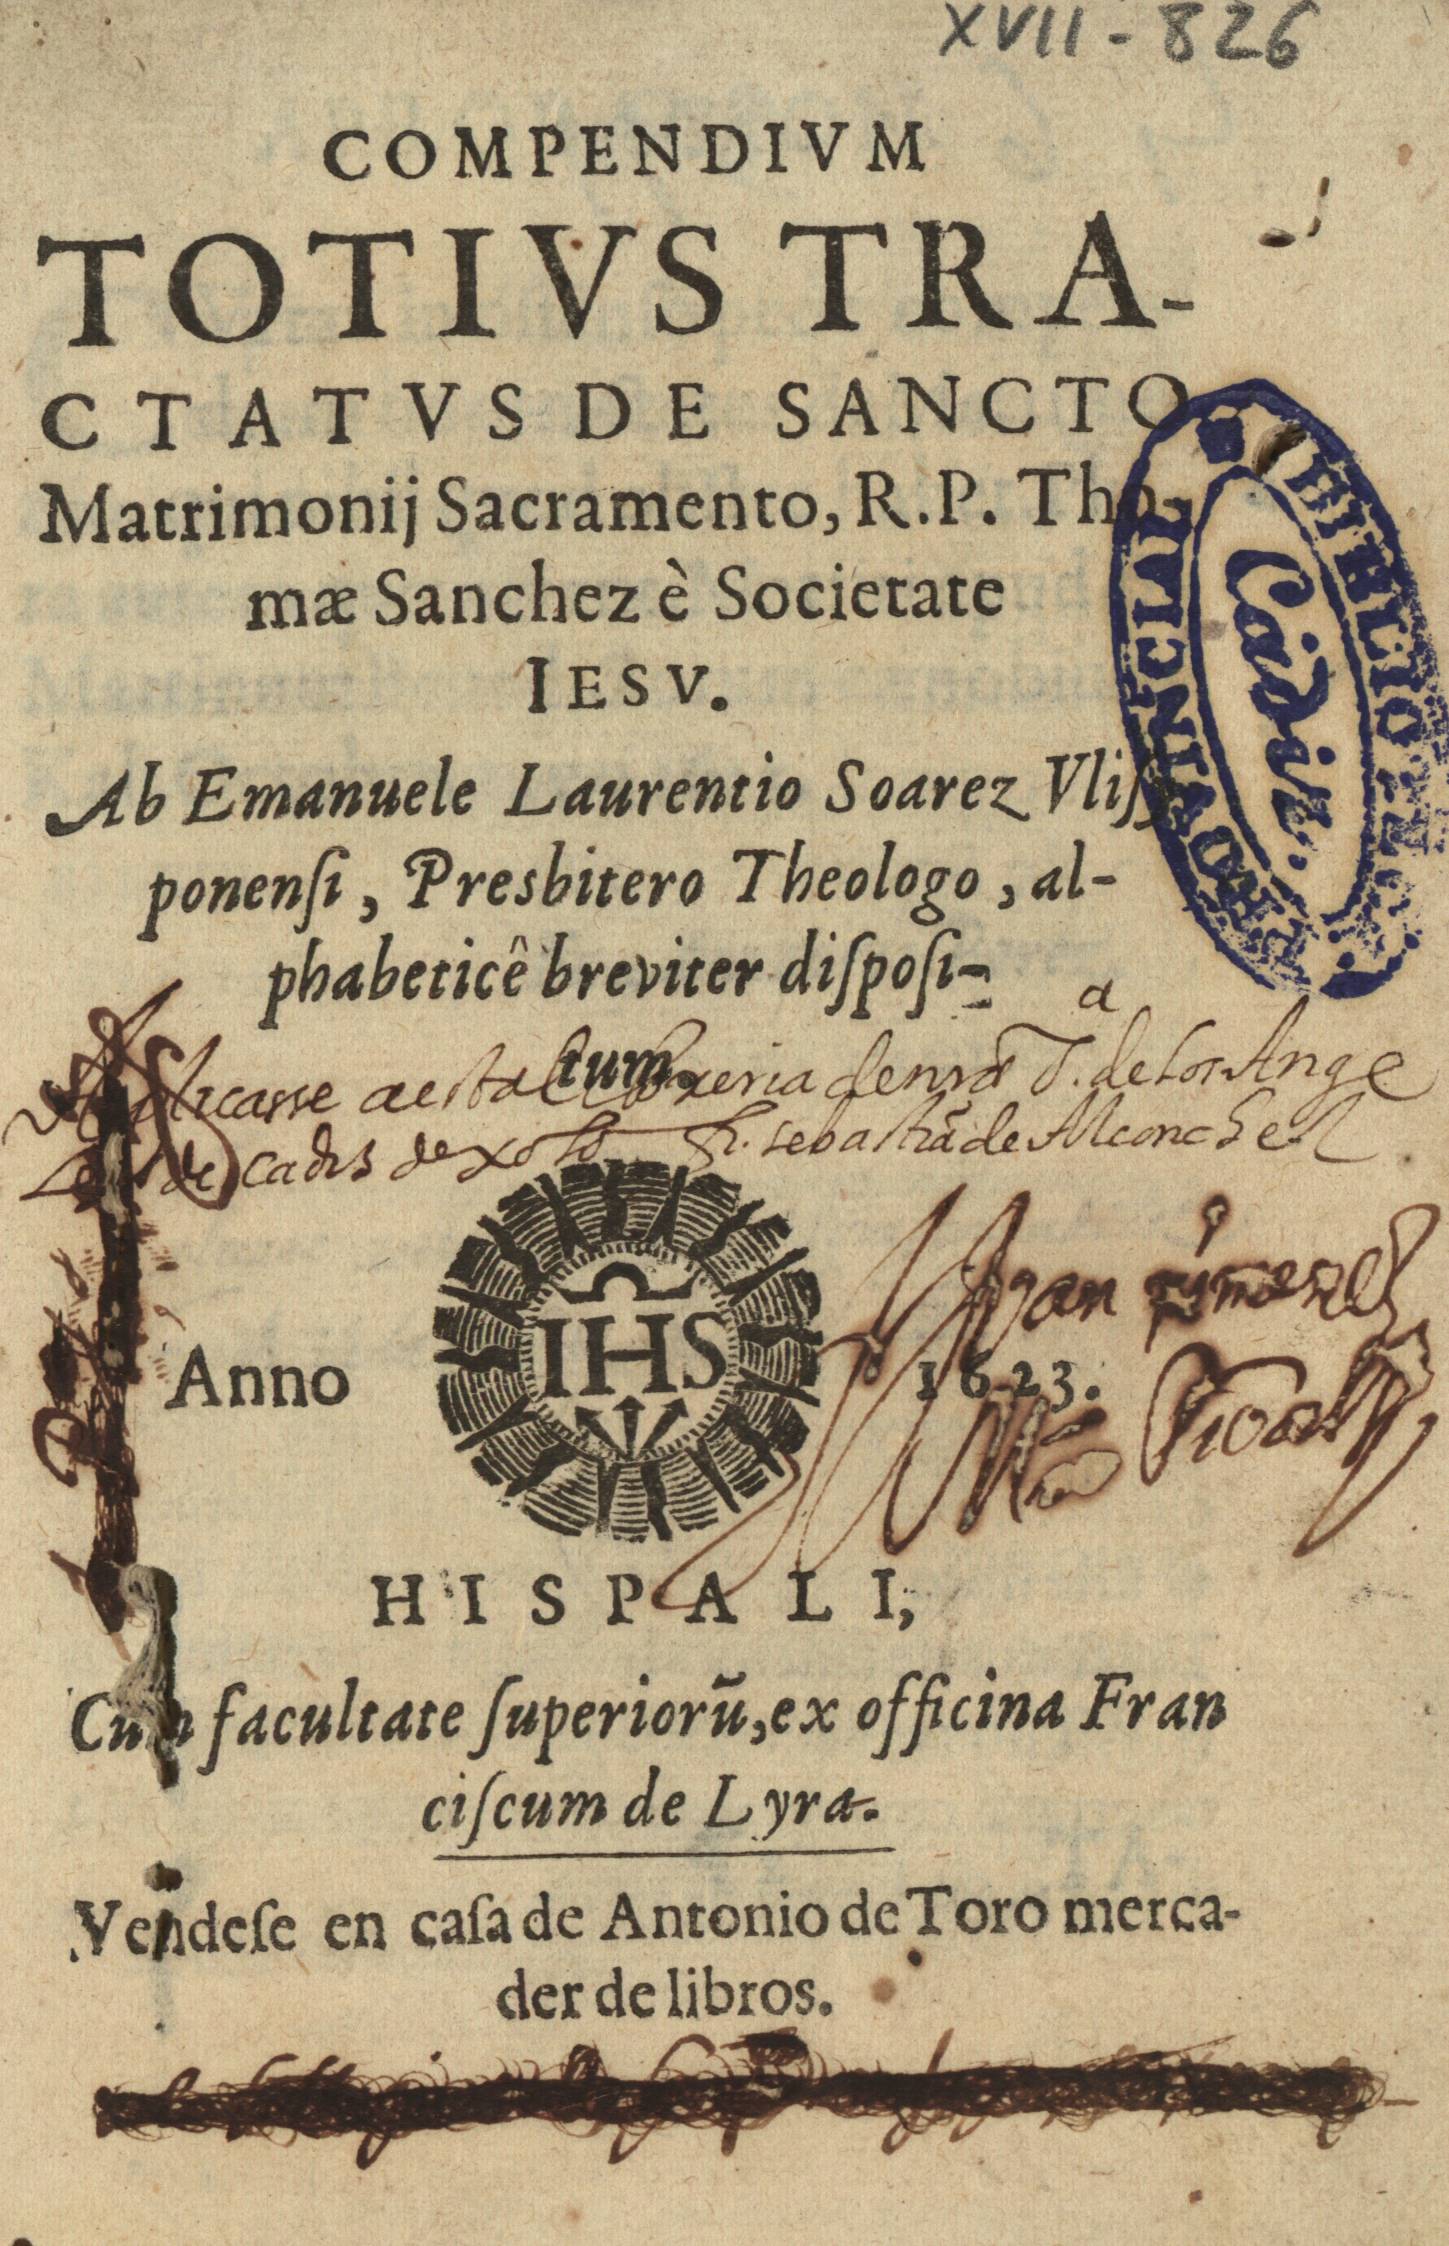 Compendivm totivs tractatvs de Sancto Matrimonii Sacramento, R.P. Thomae Sanchez è Societate Iesv.